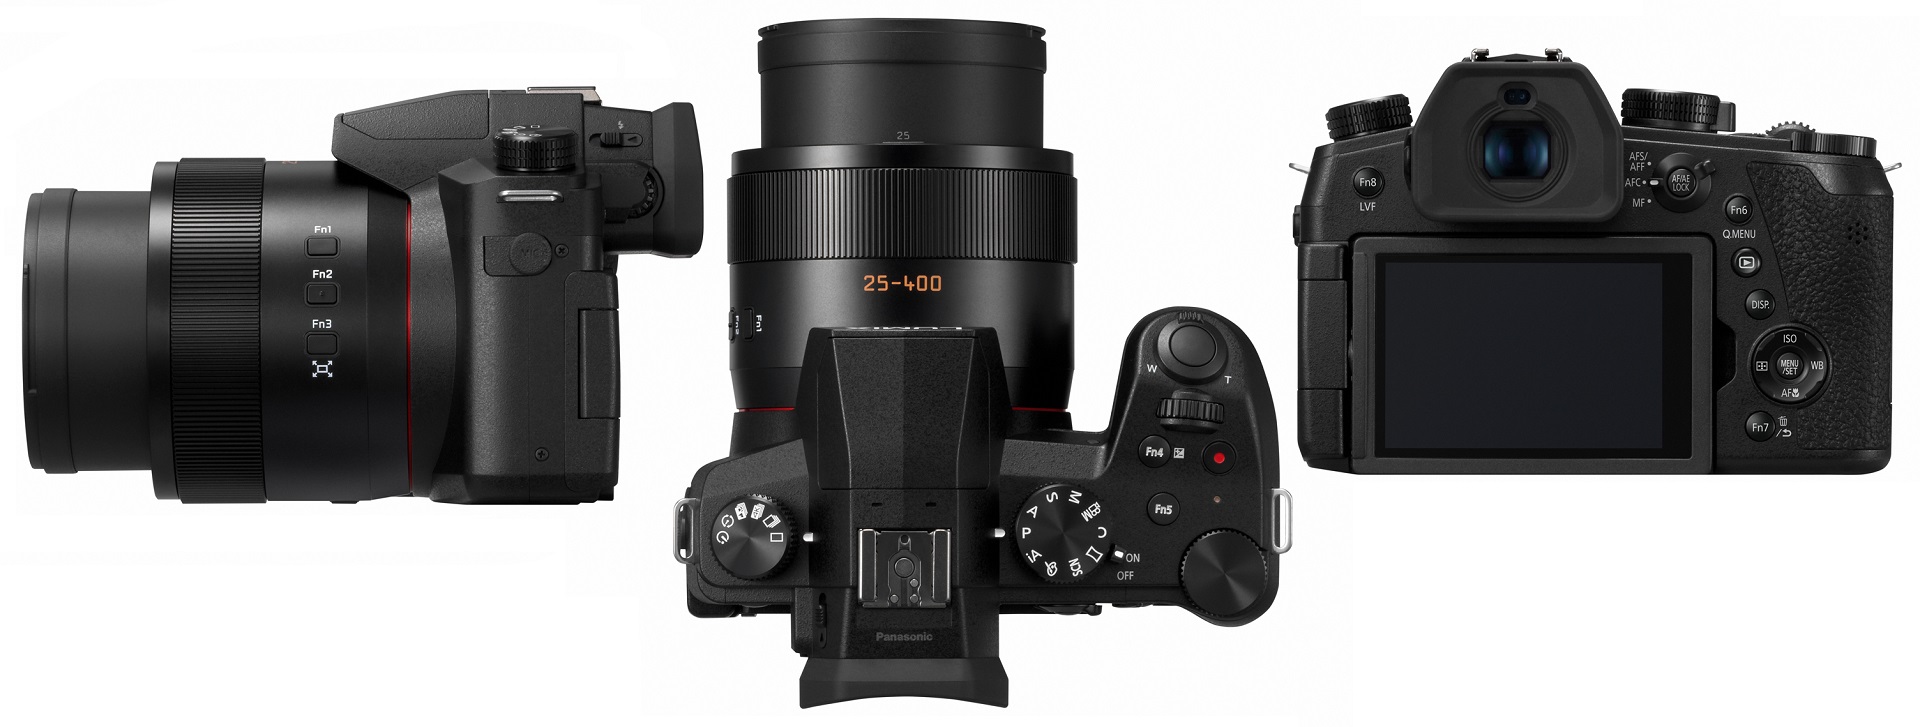 van mening zijn lippen aantrekkelijk Panasonic LUMIX FZ1000 II and TZ95 - New Bridge and Travel Cameras  Announced | CineD